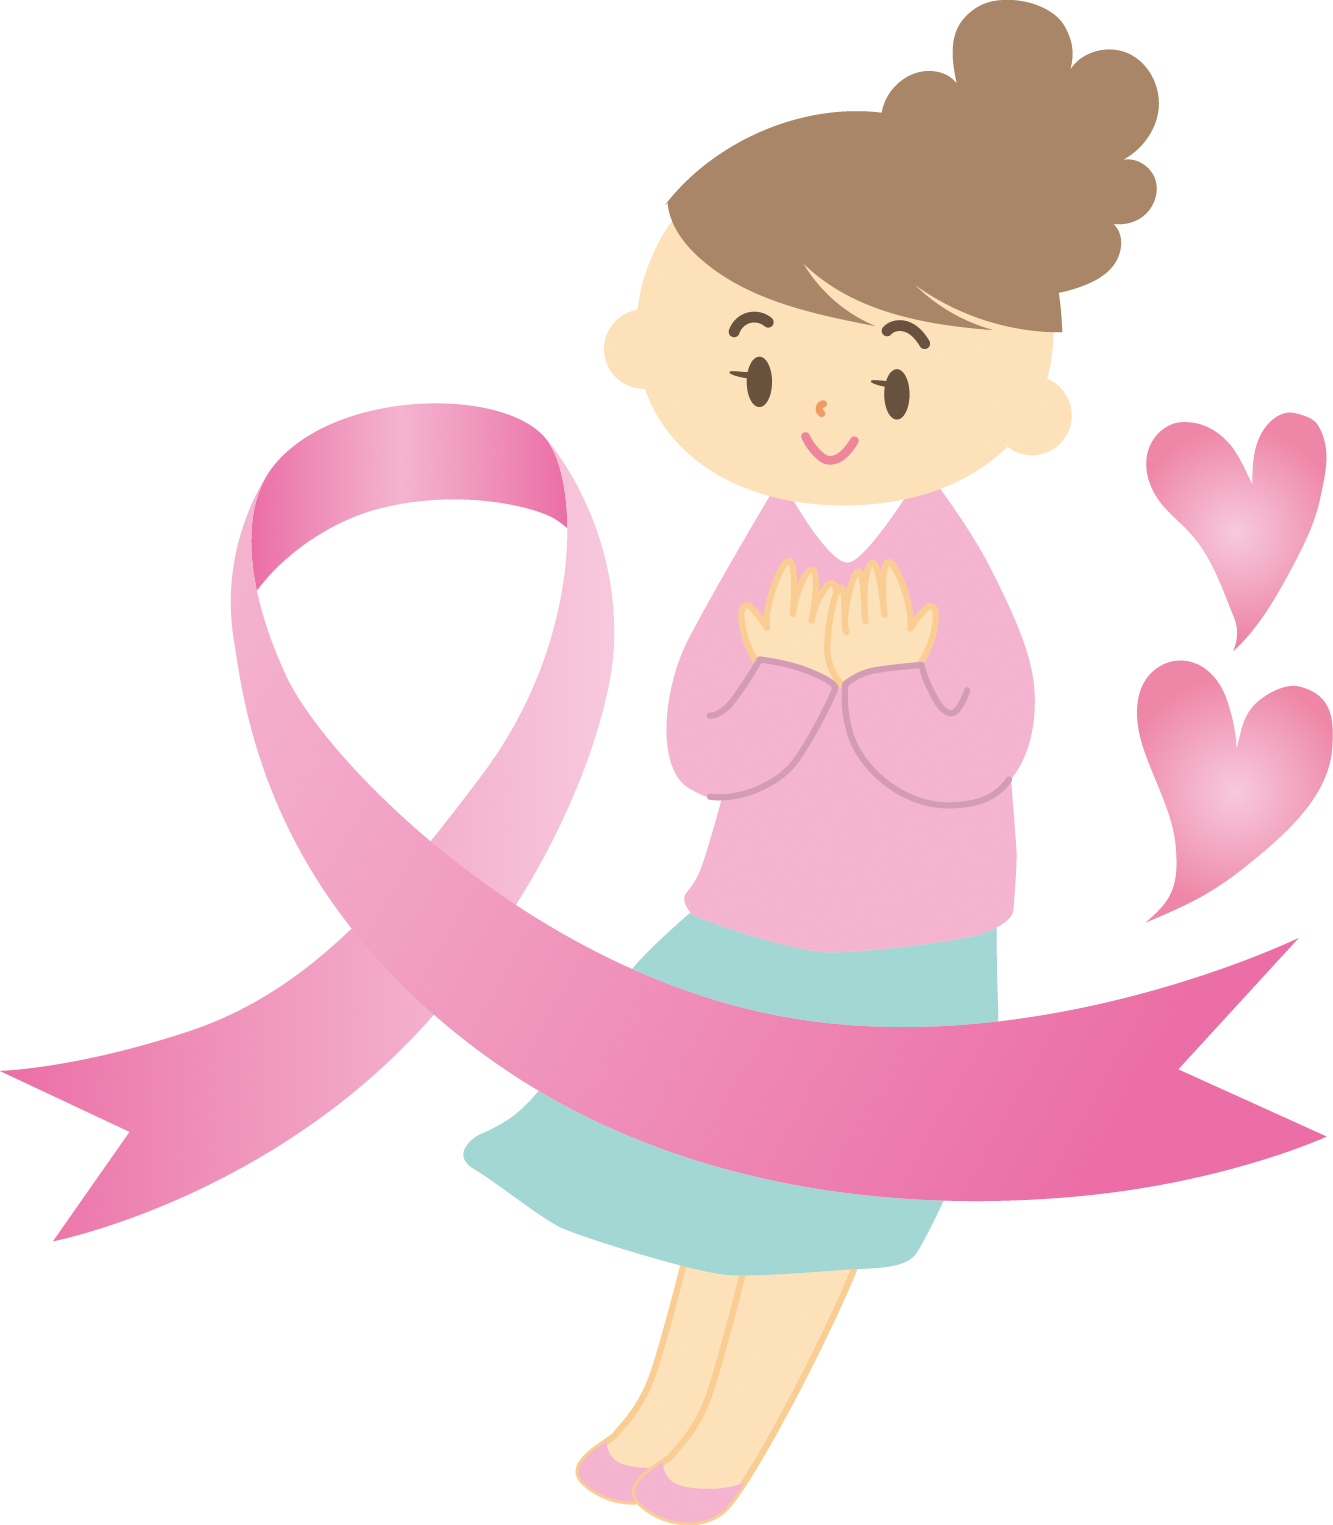 気になる乳がんについて、いろいろ学べる市民講座が6月25日にフェリエ南草津で開催されます。